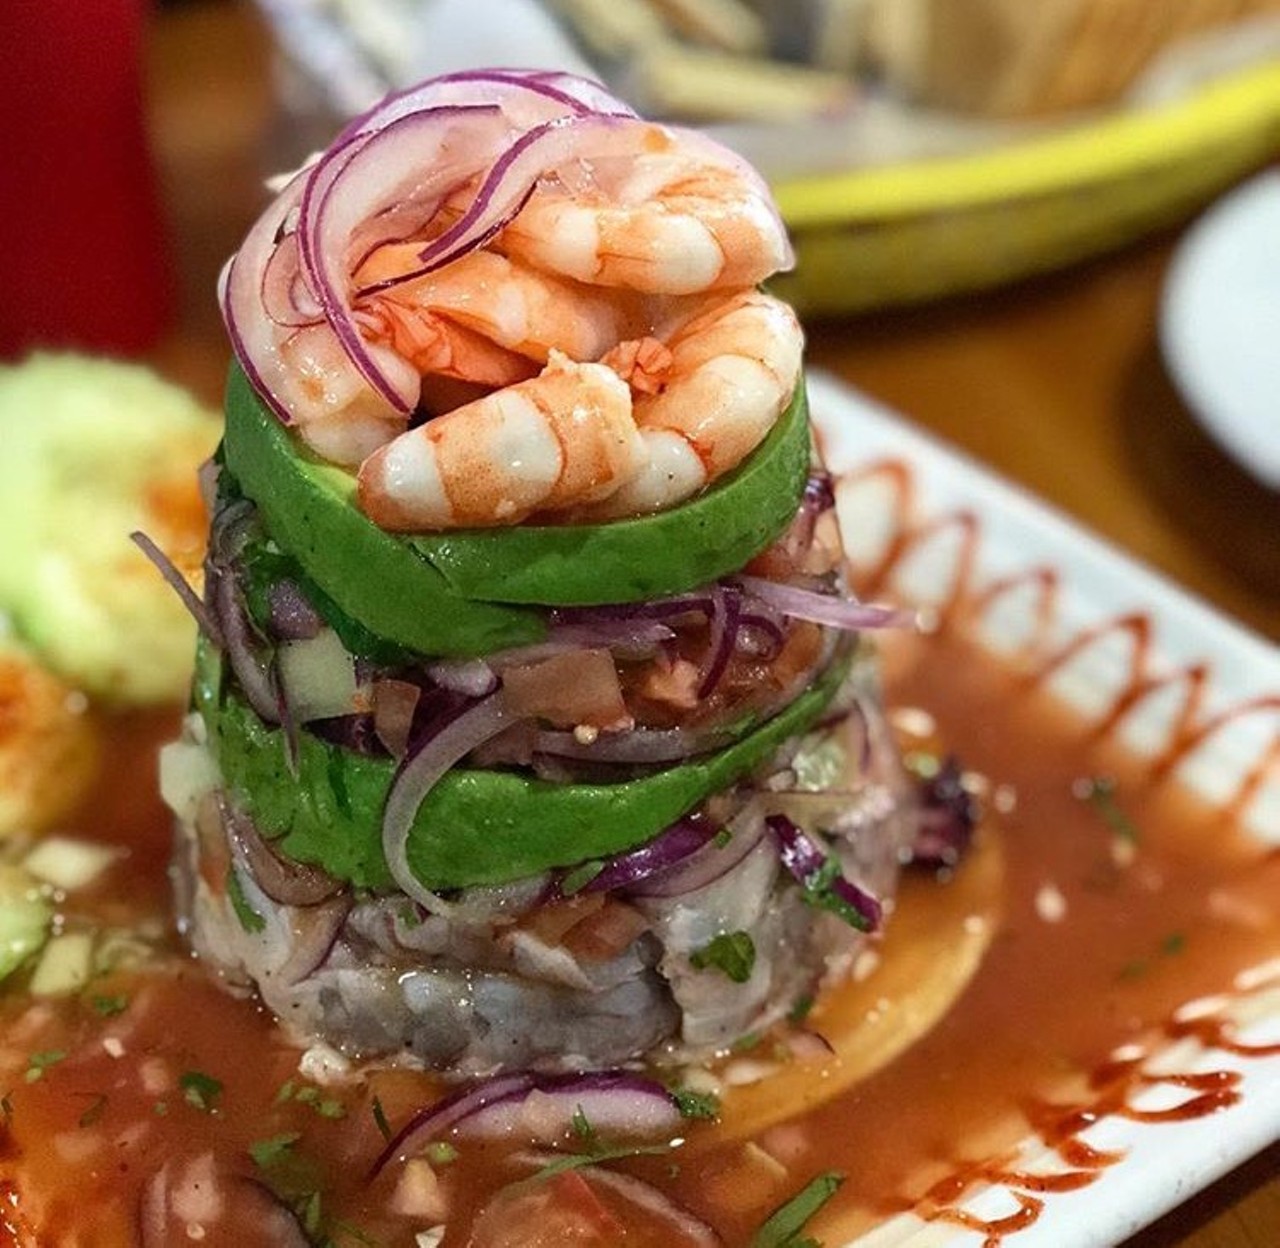 Best Seafood
Mariscos El Bucanero, multiple locations, el-bucanero.com
Photo via Instagram / stine.eats